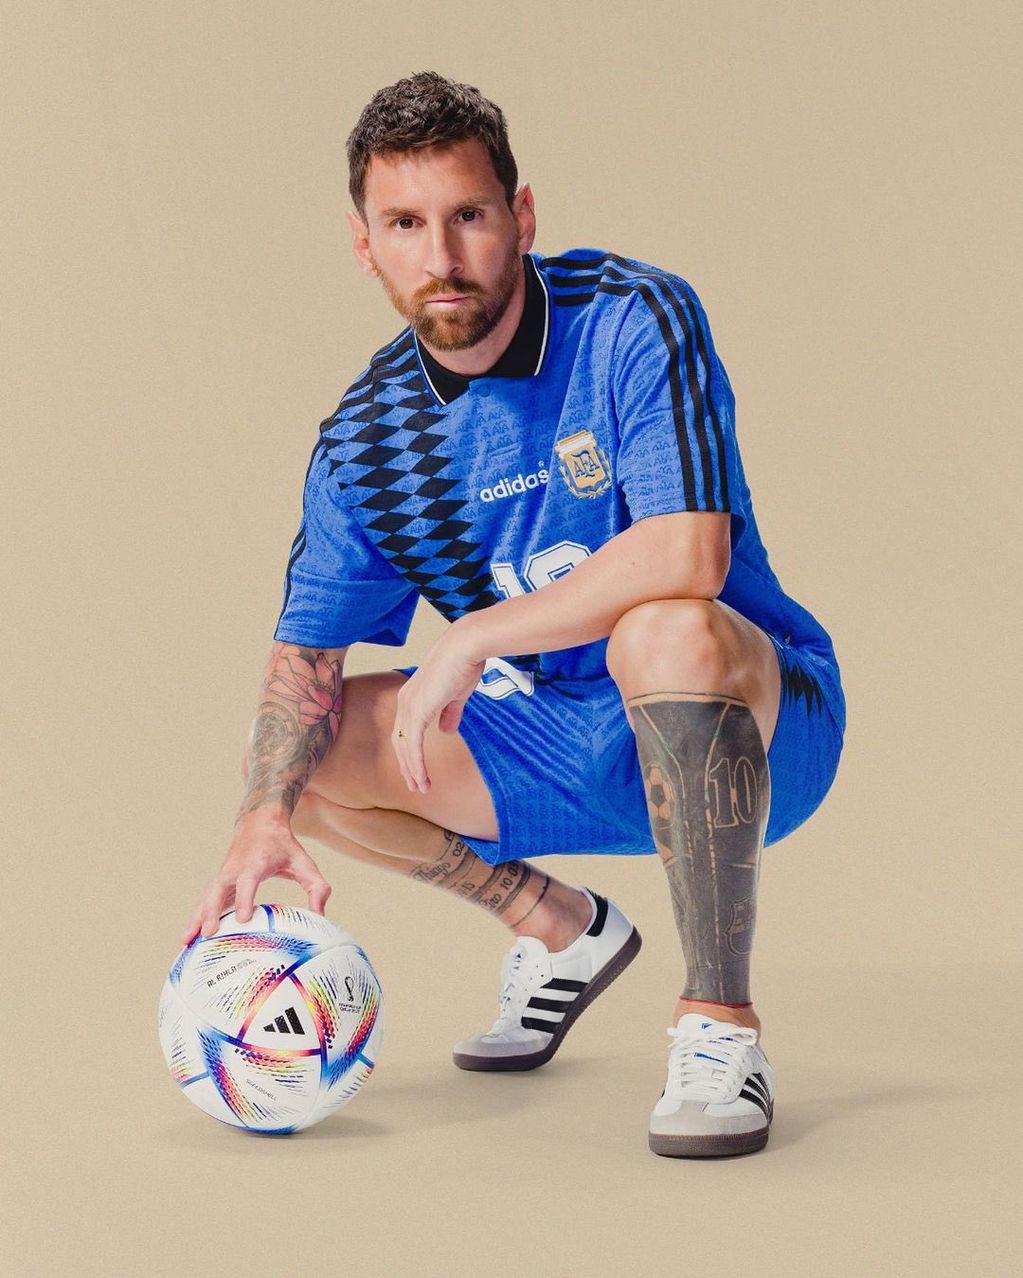 La camiseta de la selección, formato retro similar a la del Mundial 1994, mostrada por Lionel Messi. (Adidas)